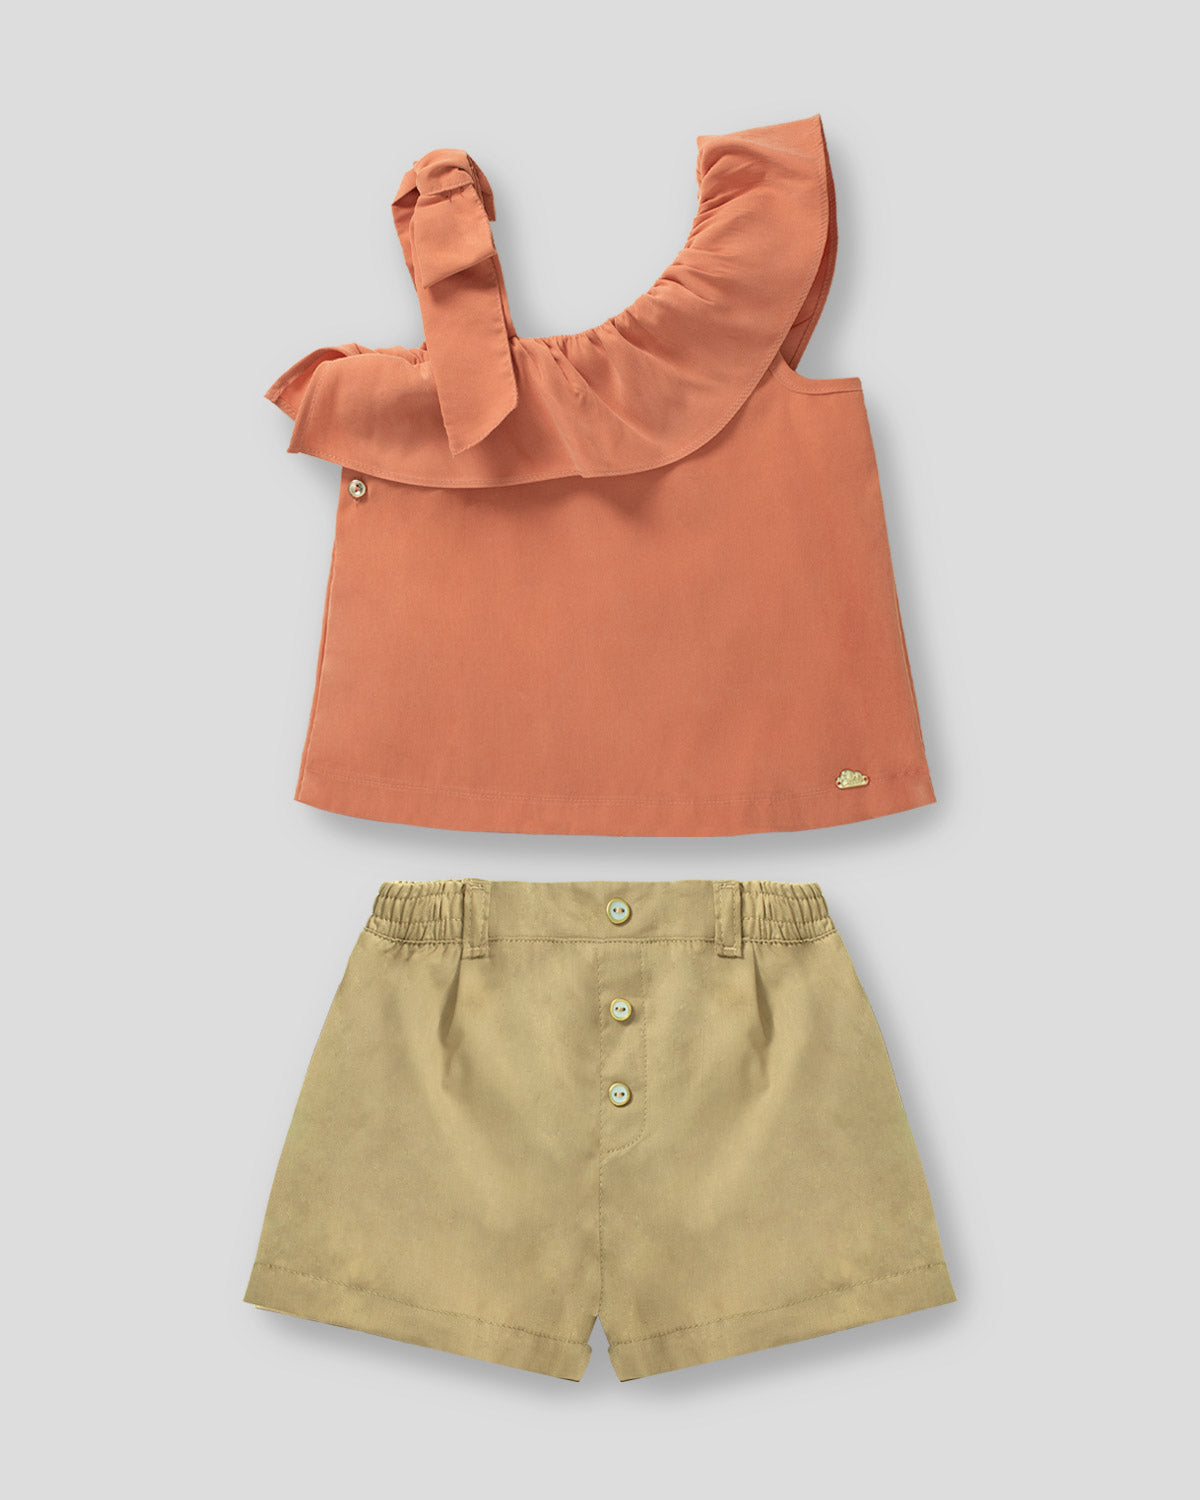 Conjunto blusa terracota con bolero cruzado y short café para niña